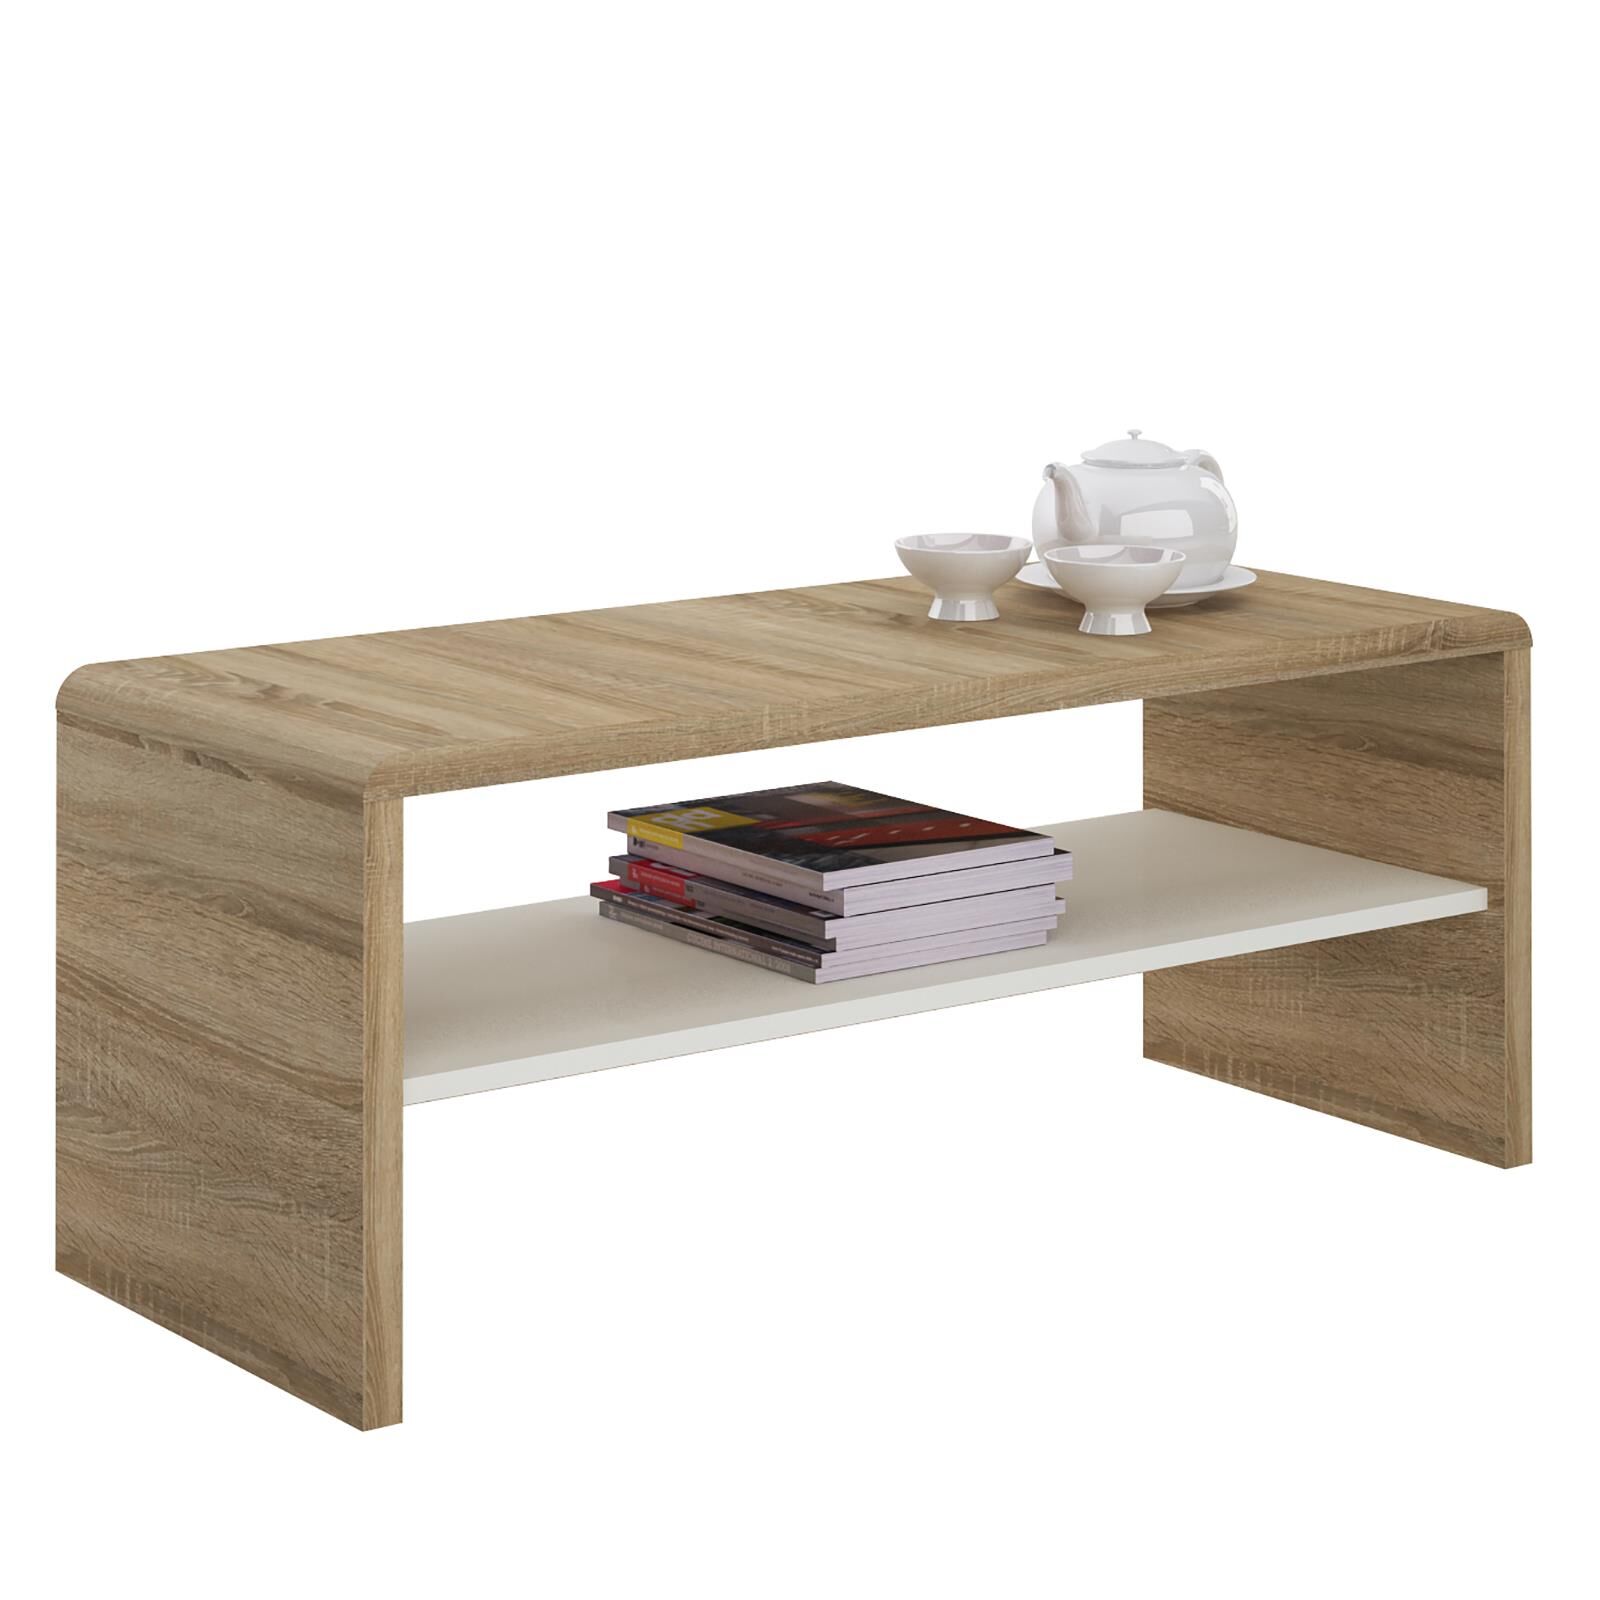 IDIMEX Table basse / Meuble TV NOELLE, en mélaminé décor chêne sonoma et blanc mat